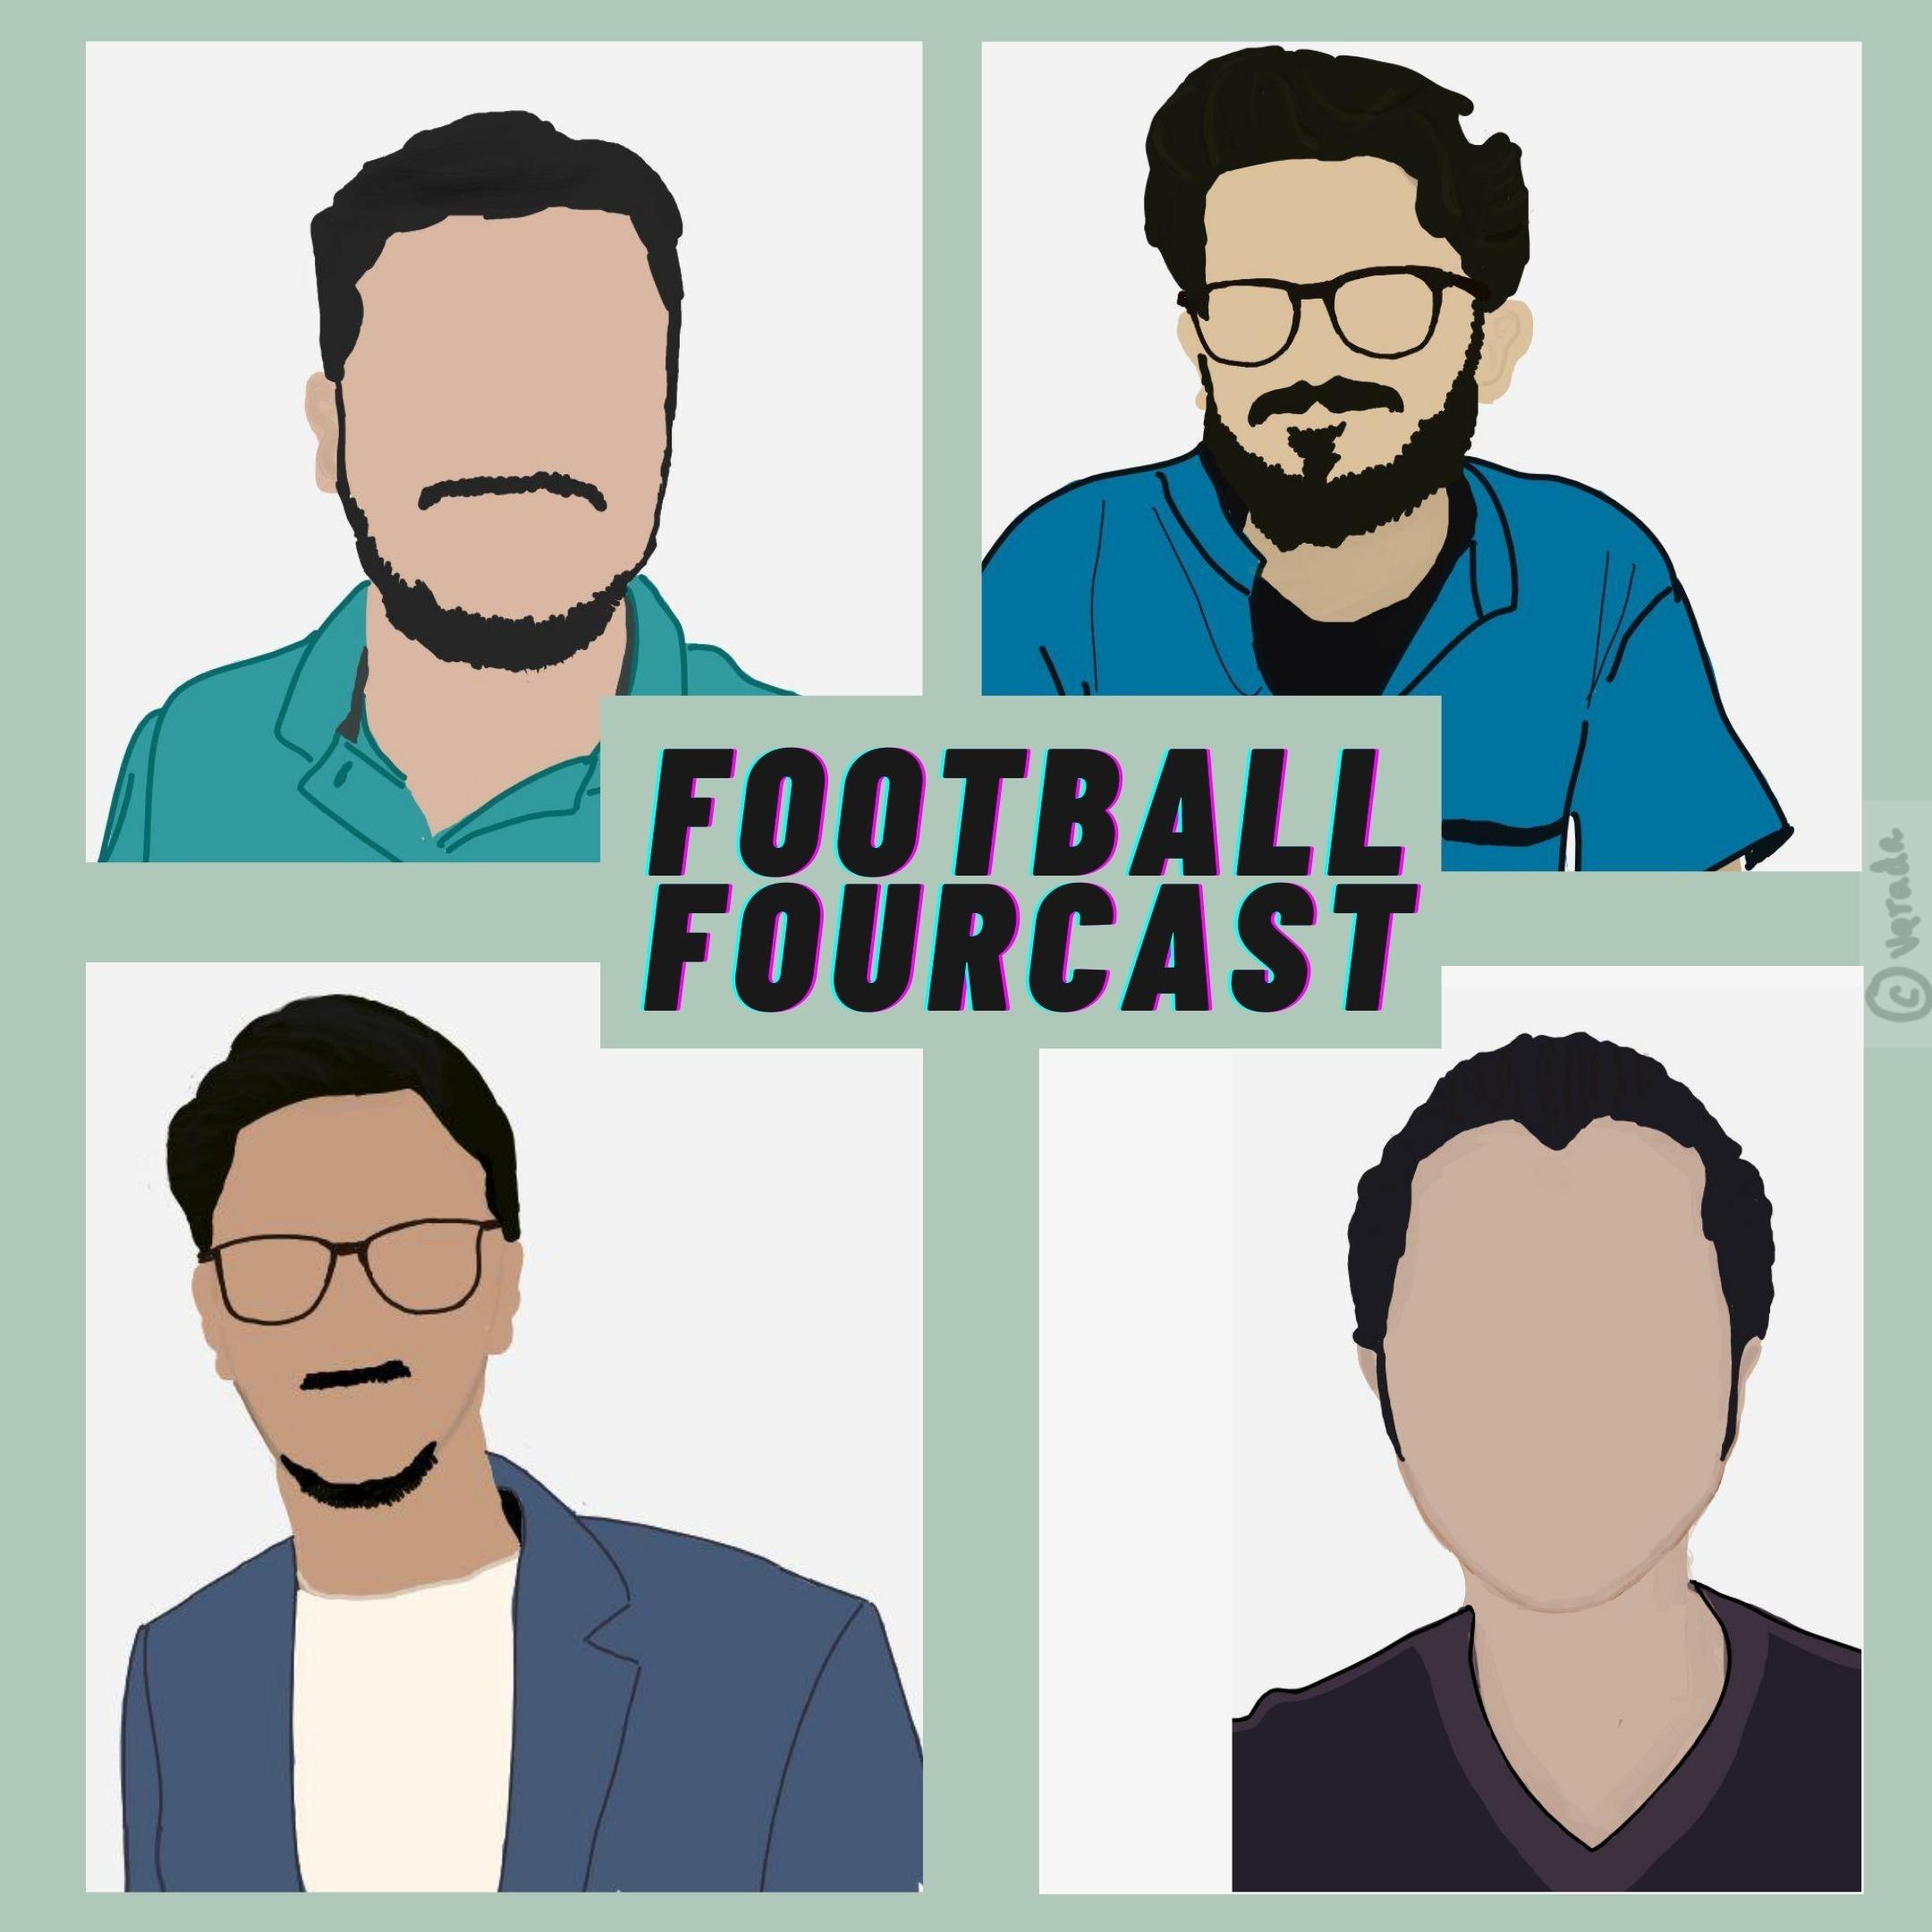 Football Fourcast